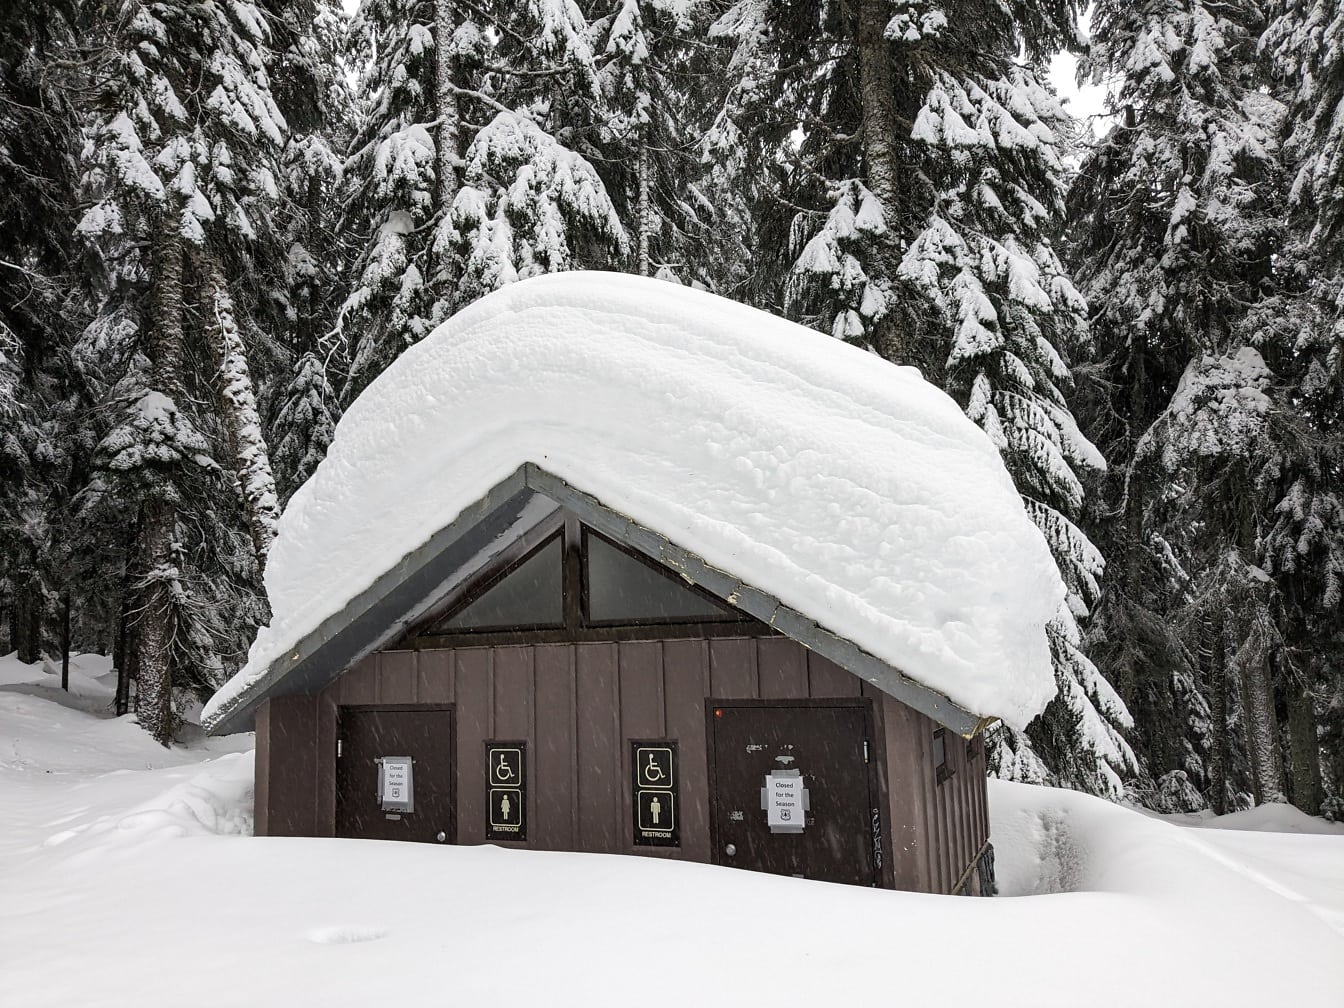 Banheiro da casa de campo nevado na neve profunda